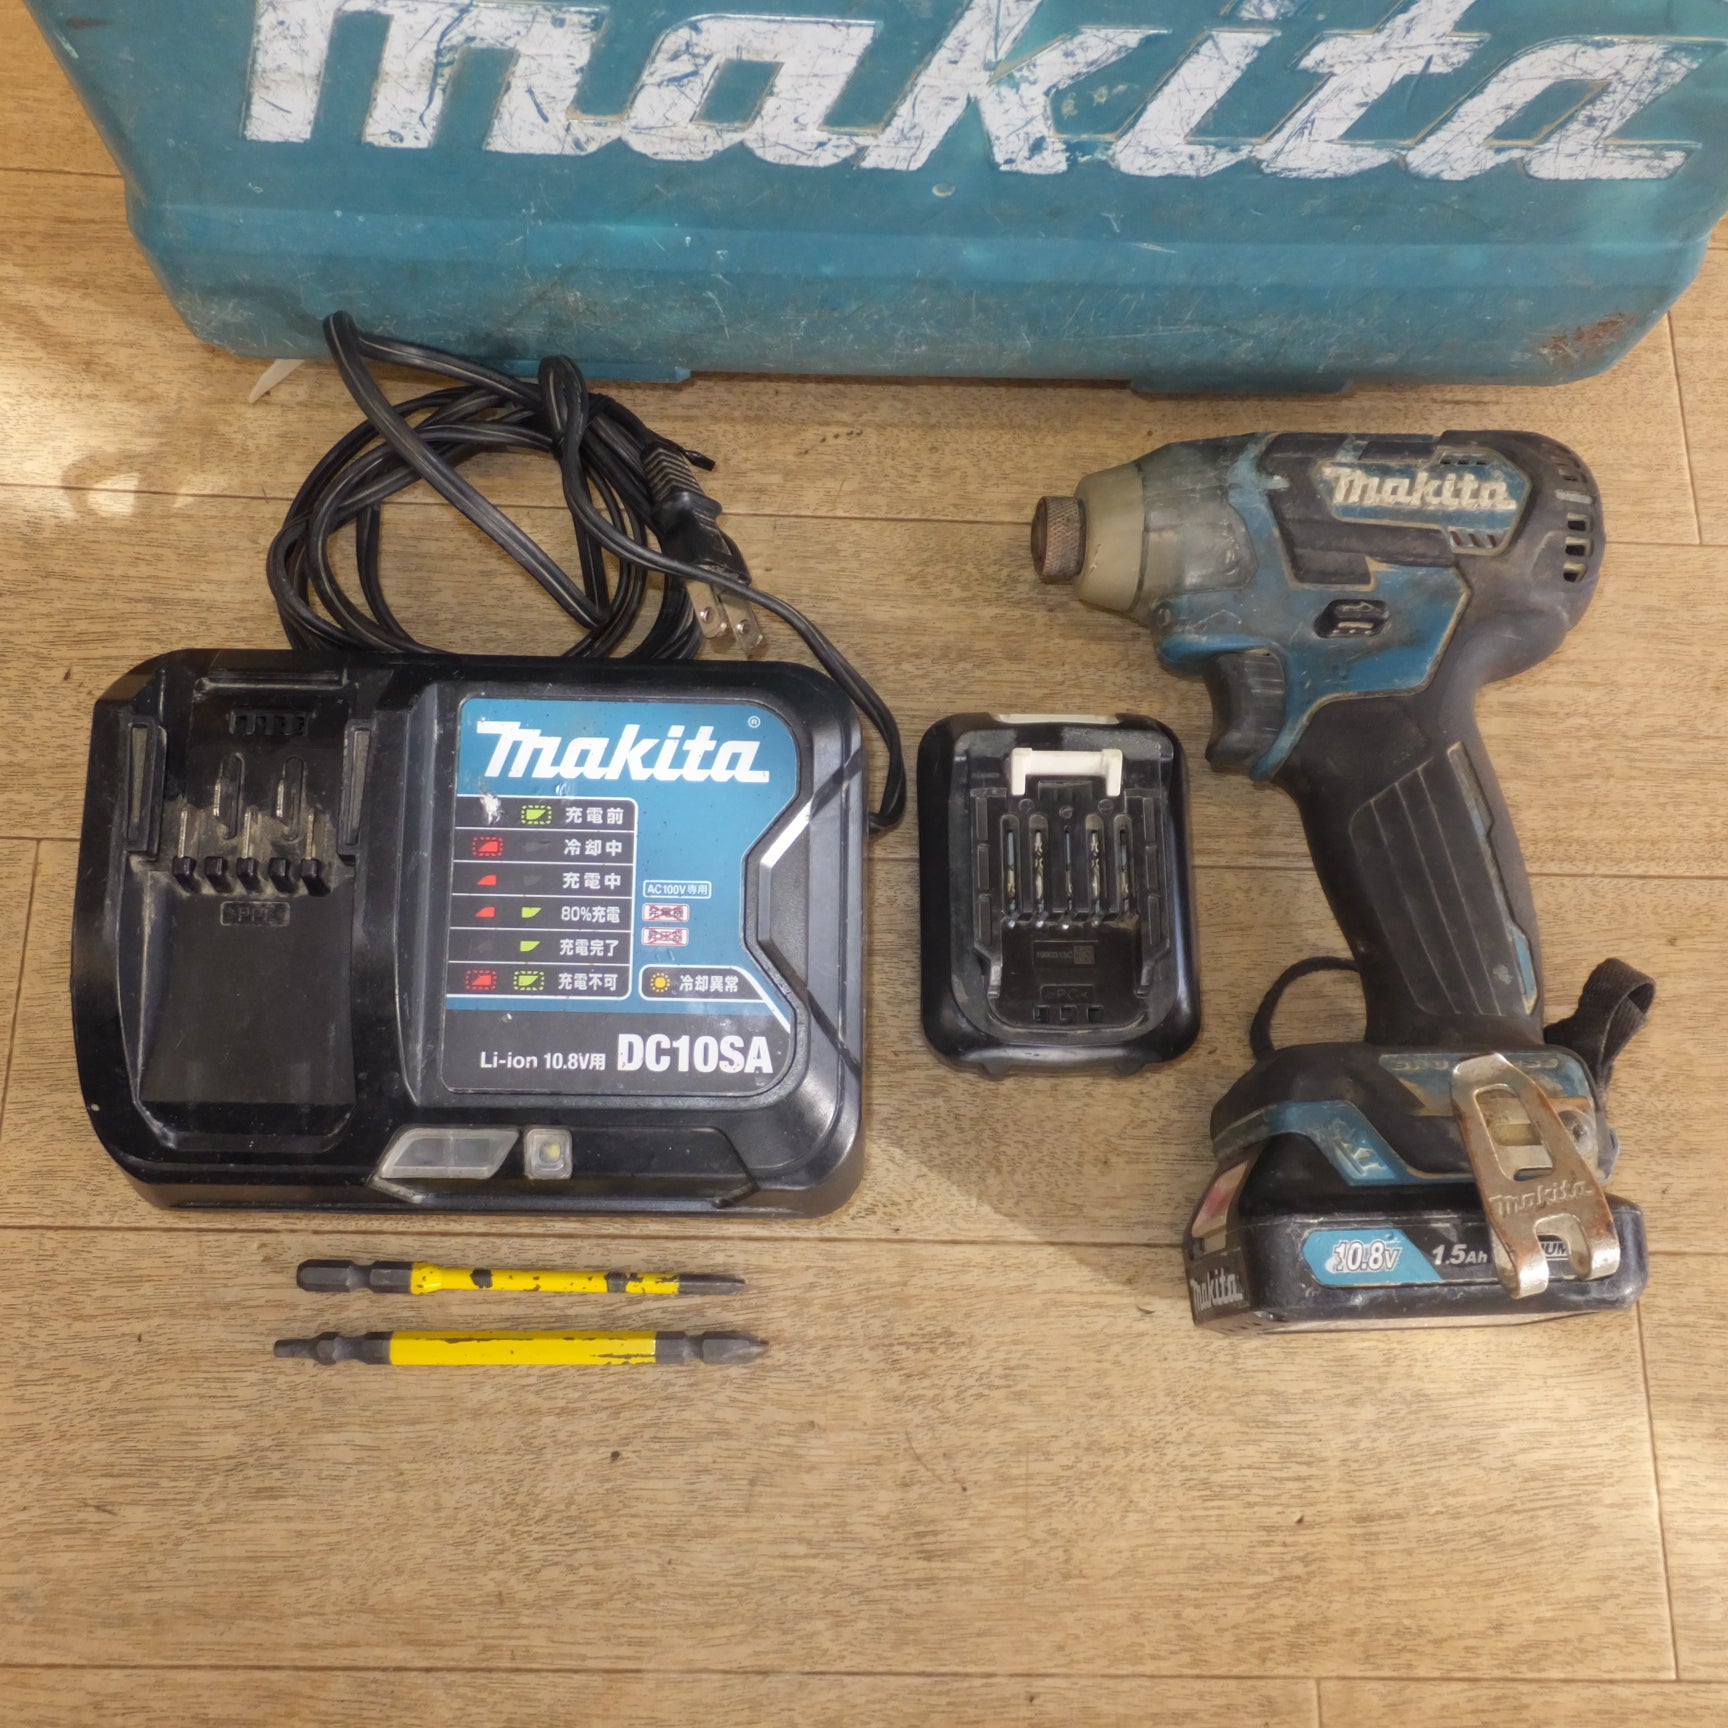 セール品makita [マキタ] 充電式インパクトドライバ [TD111DSHX] 1.5Ah 10.8V DIY コードレス マキタブルー 質量0.97kg 電動工具 /未開封品 4376 本体